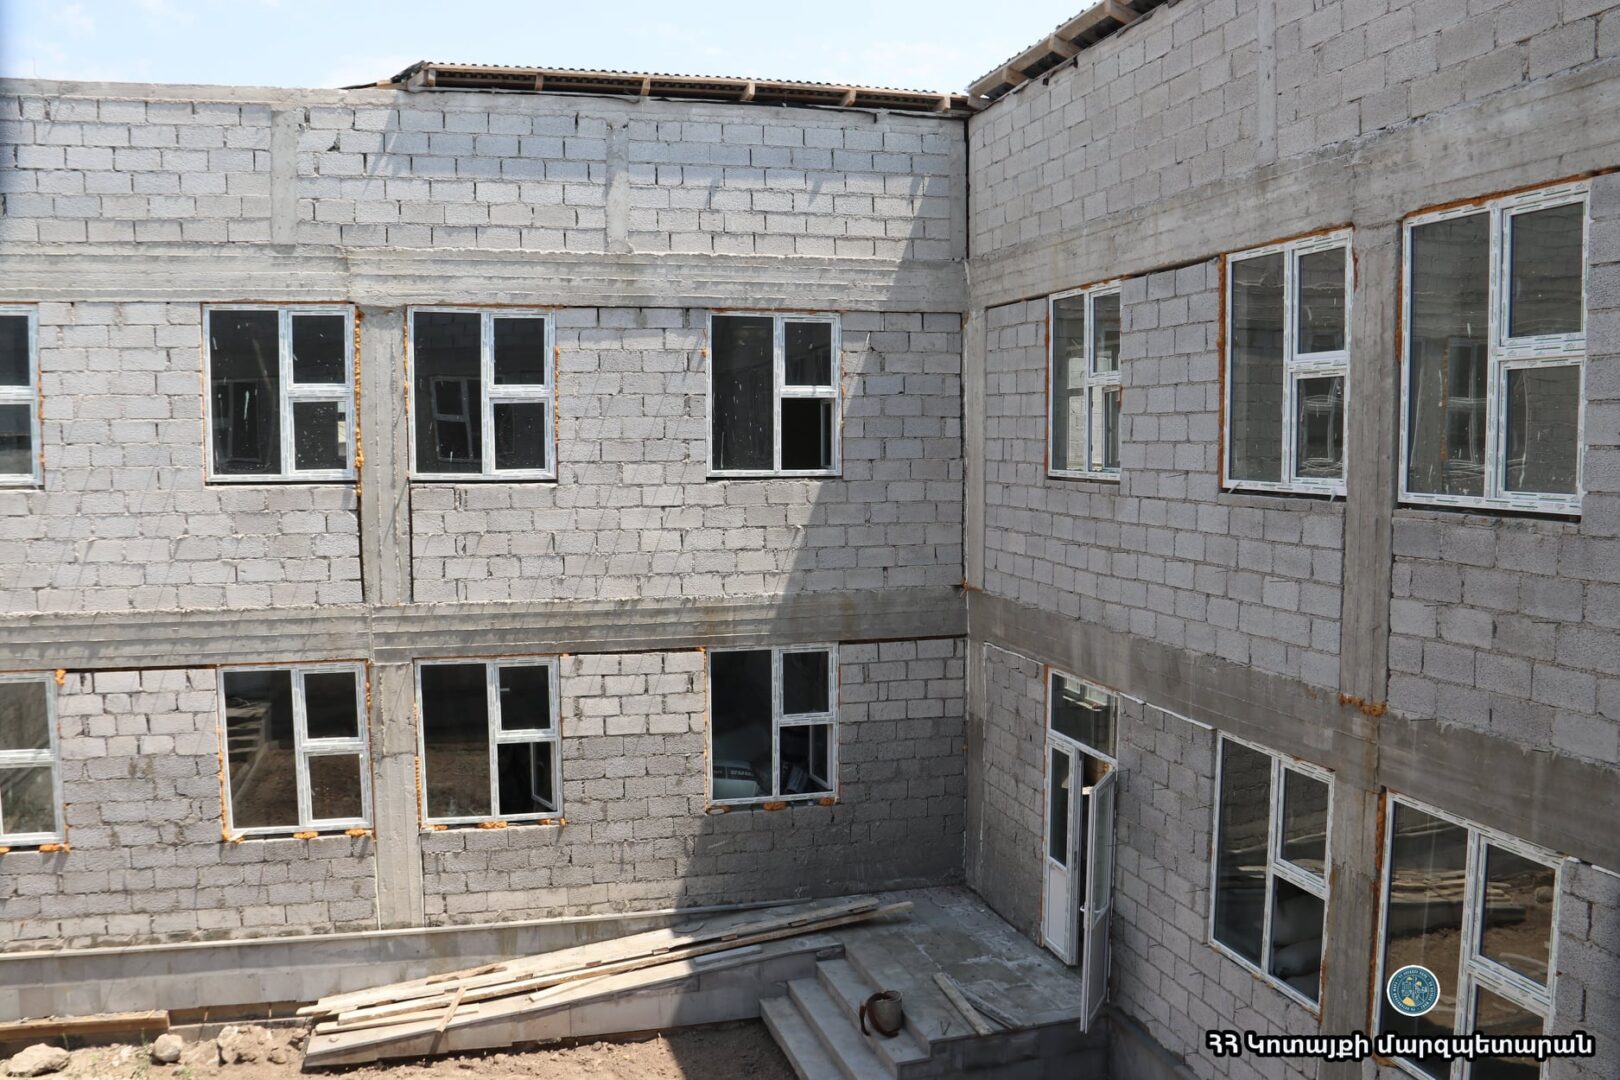 Արամուսը շուտով շահագործման կհանձնի նորակառույց, իսկ Մայակովսկին՝ հիմնանորոգված մանկապարտեզների շենքերը